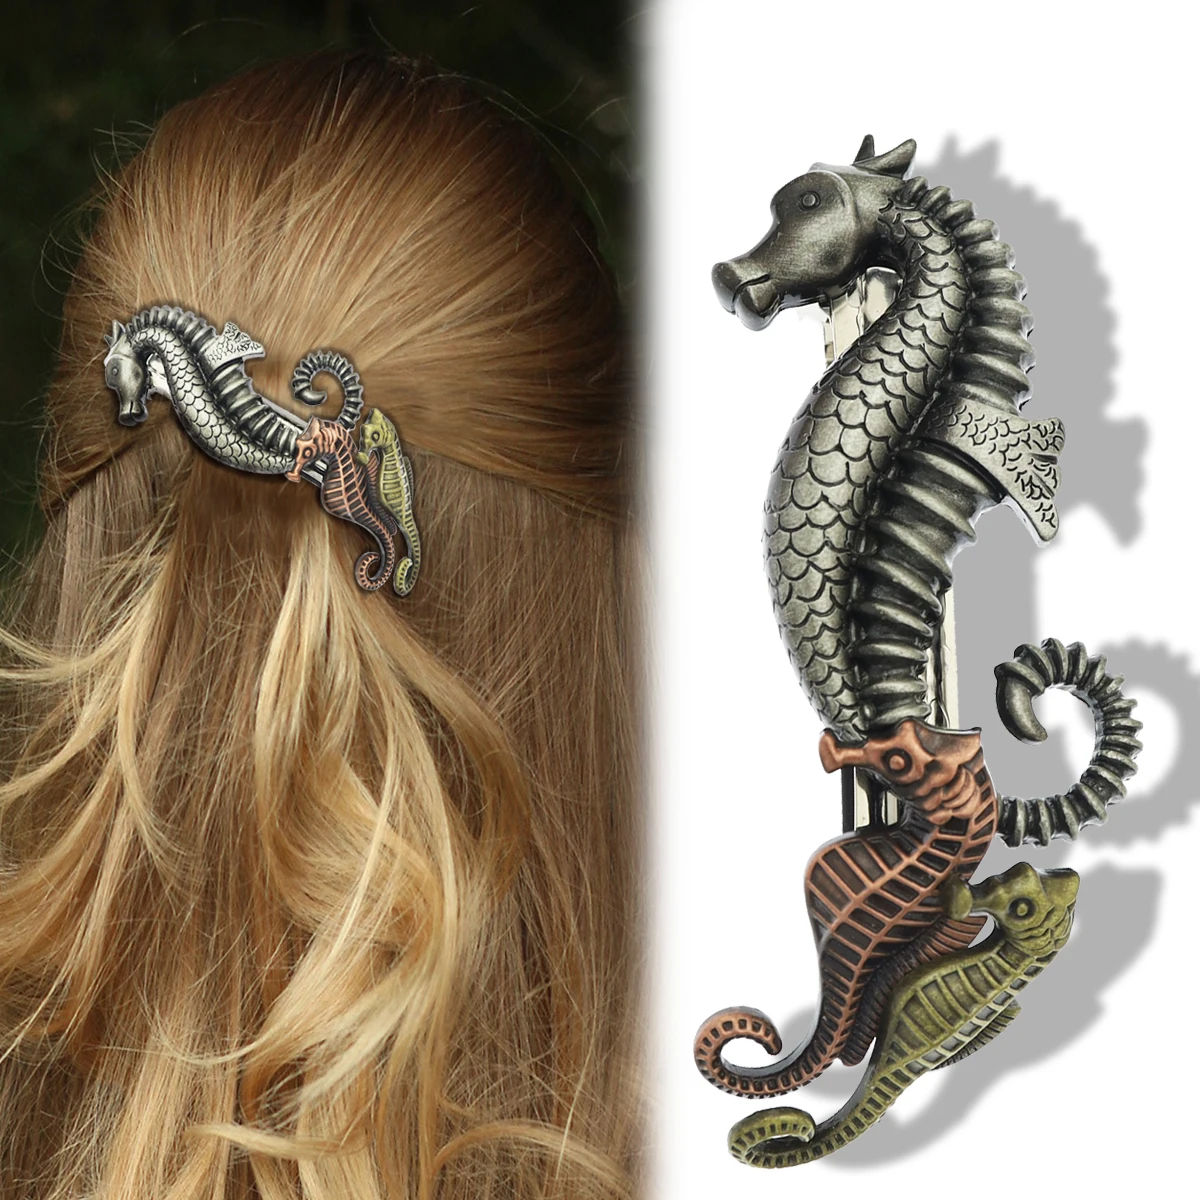 Заколка для волос женская металлическая в стиле морских лошадей цвета морской